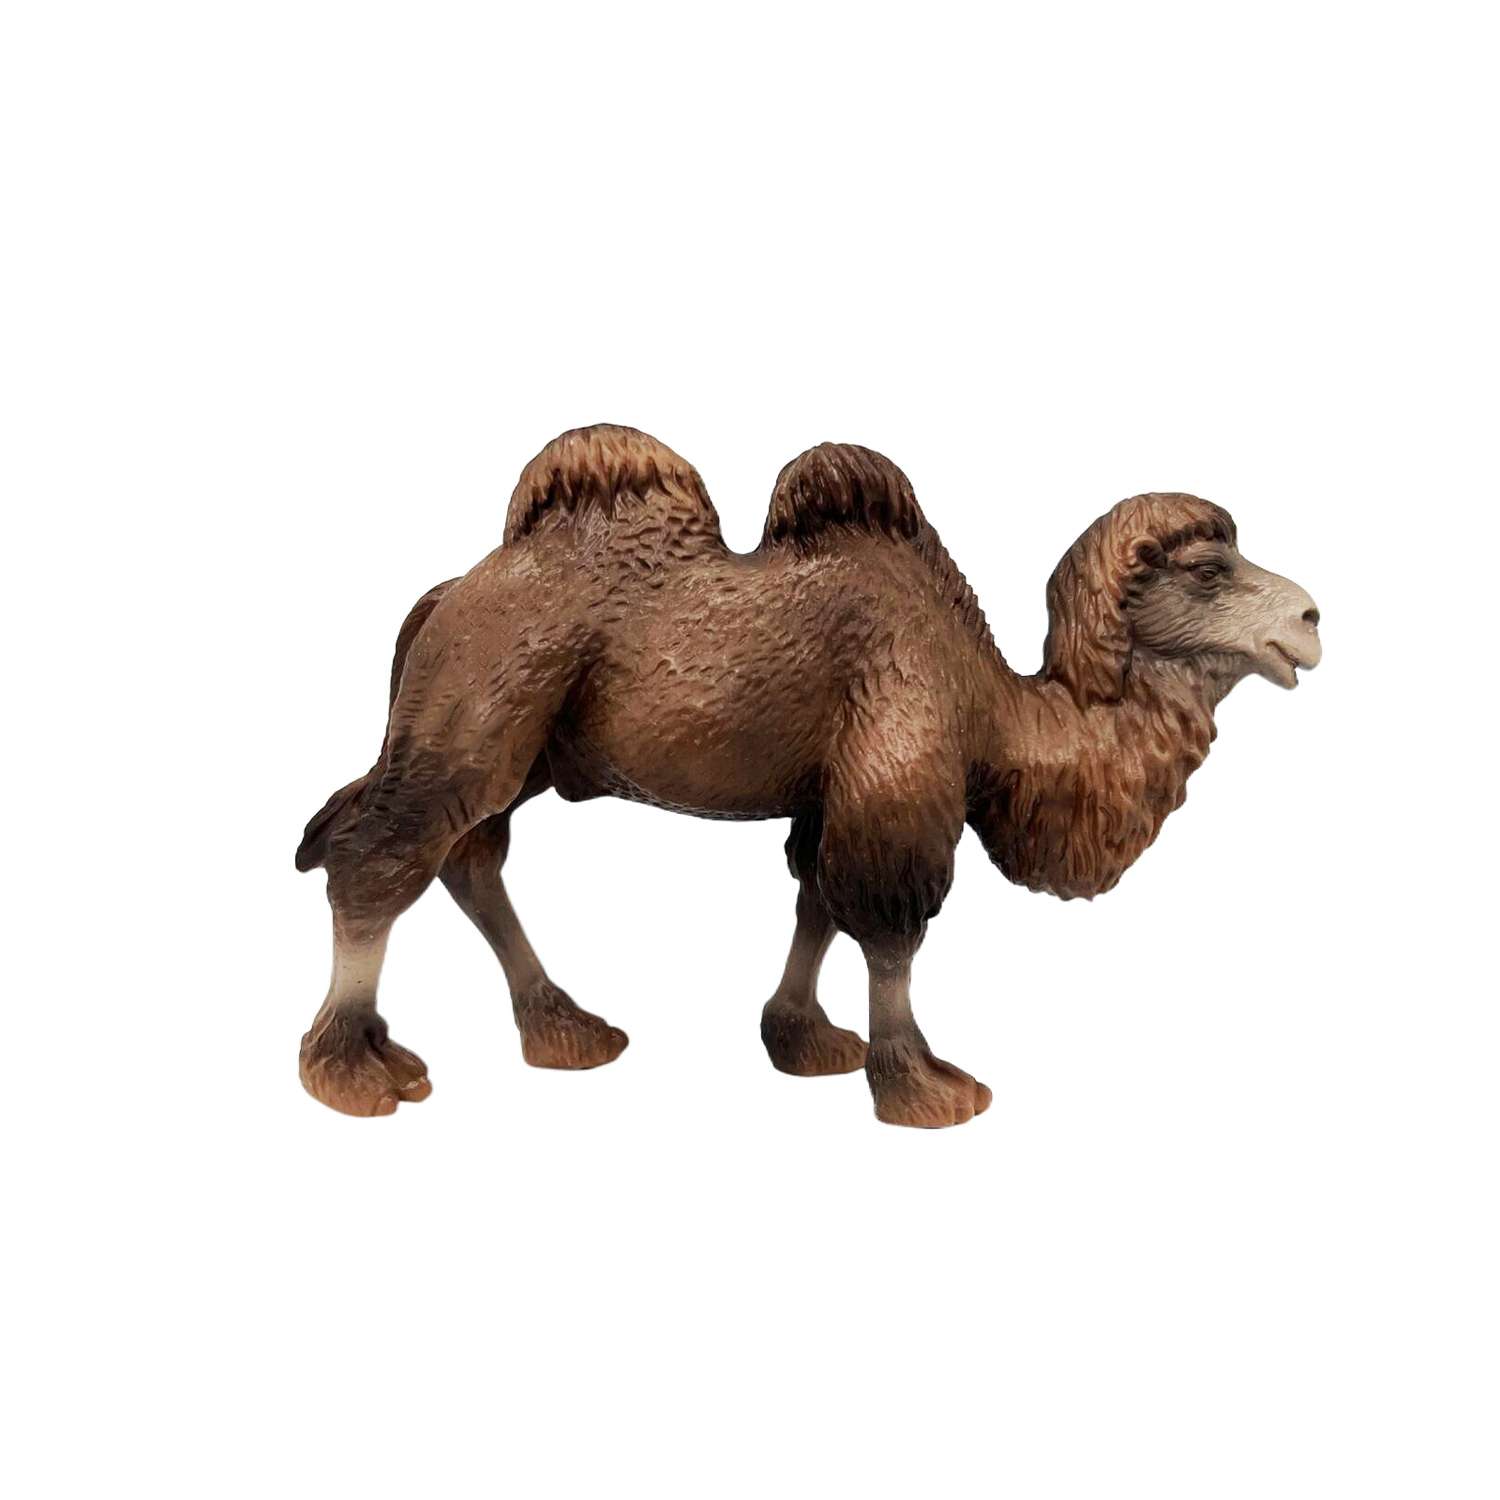 Фигурка животного Детское Время Двугорбый верблюд породы Бактриан - фото 2